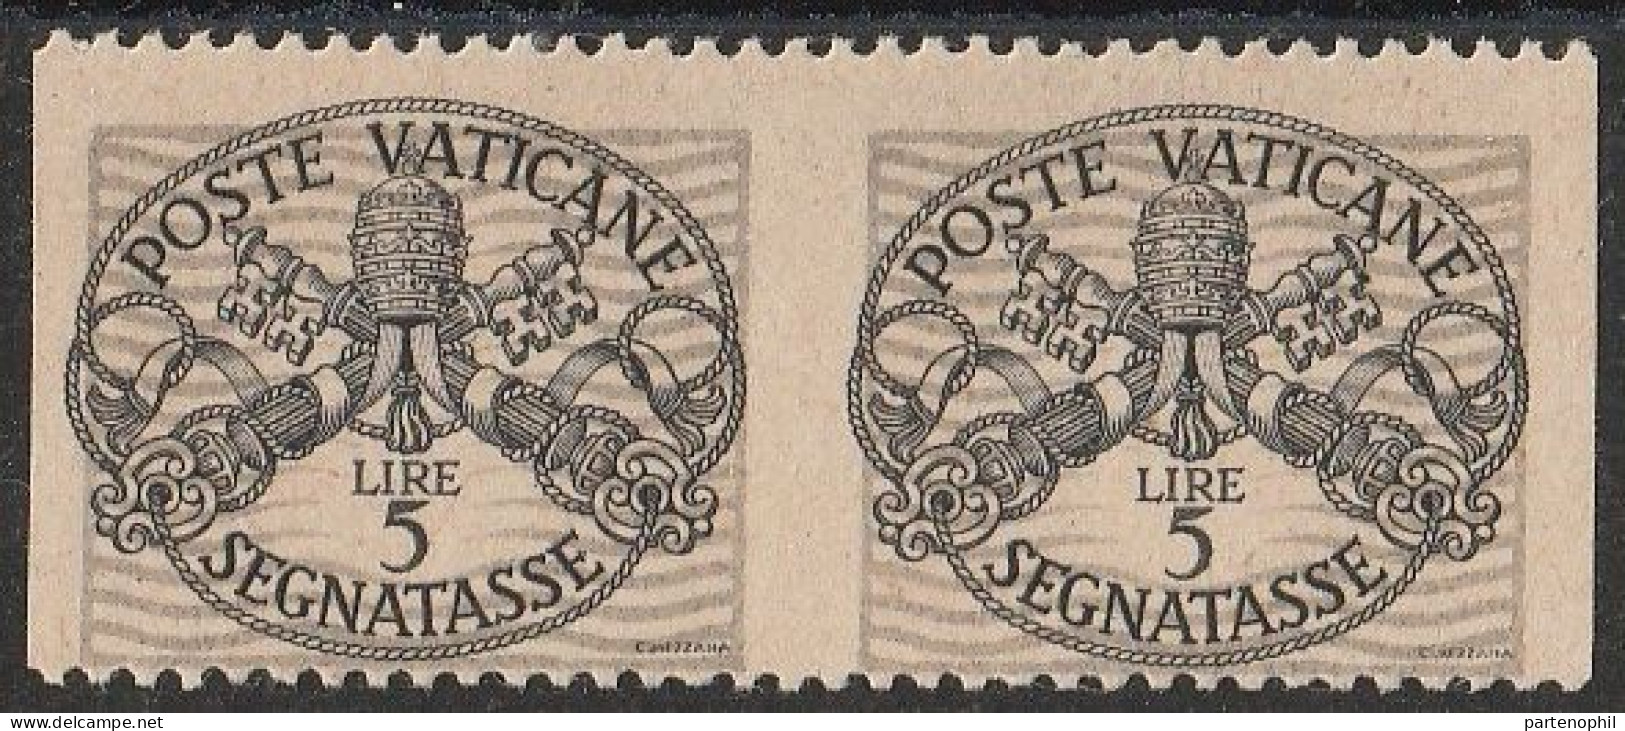 Lotto 424 Vaticano Varietà 1946 - Segnatasse Coppia Verticale Del L. 5 Non Dentellata N. 12c. MH - Varietà E Curiosità